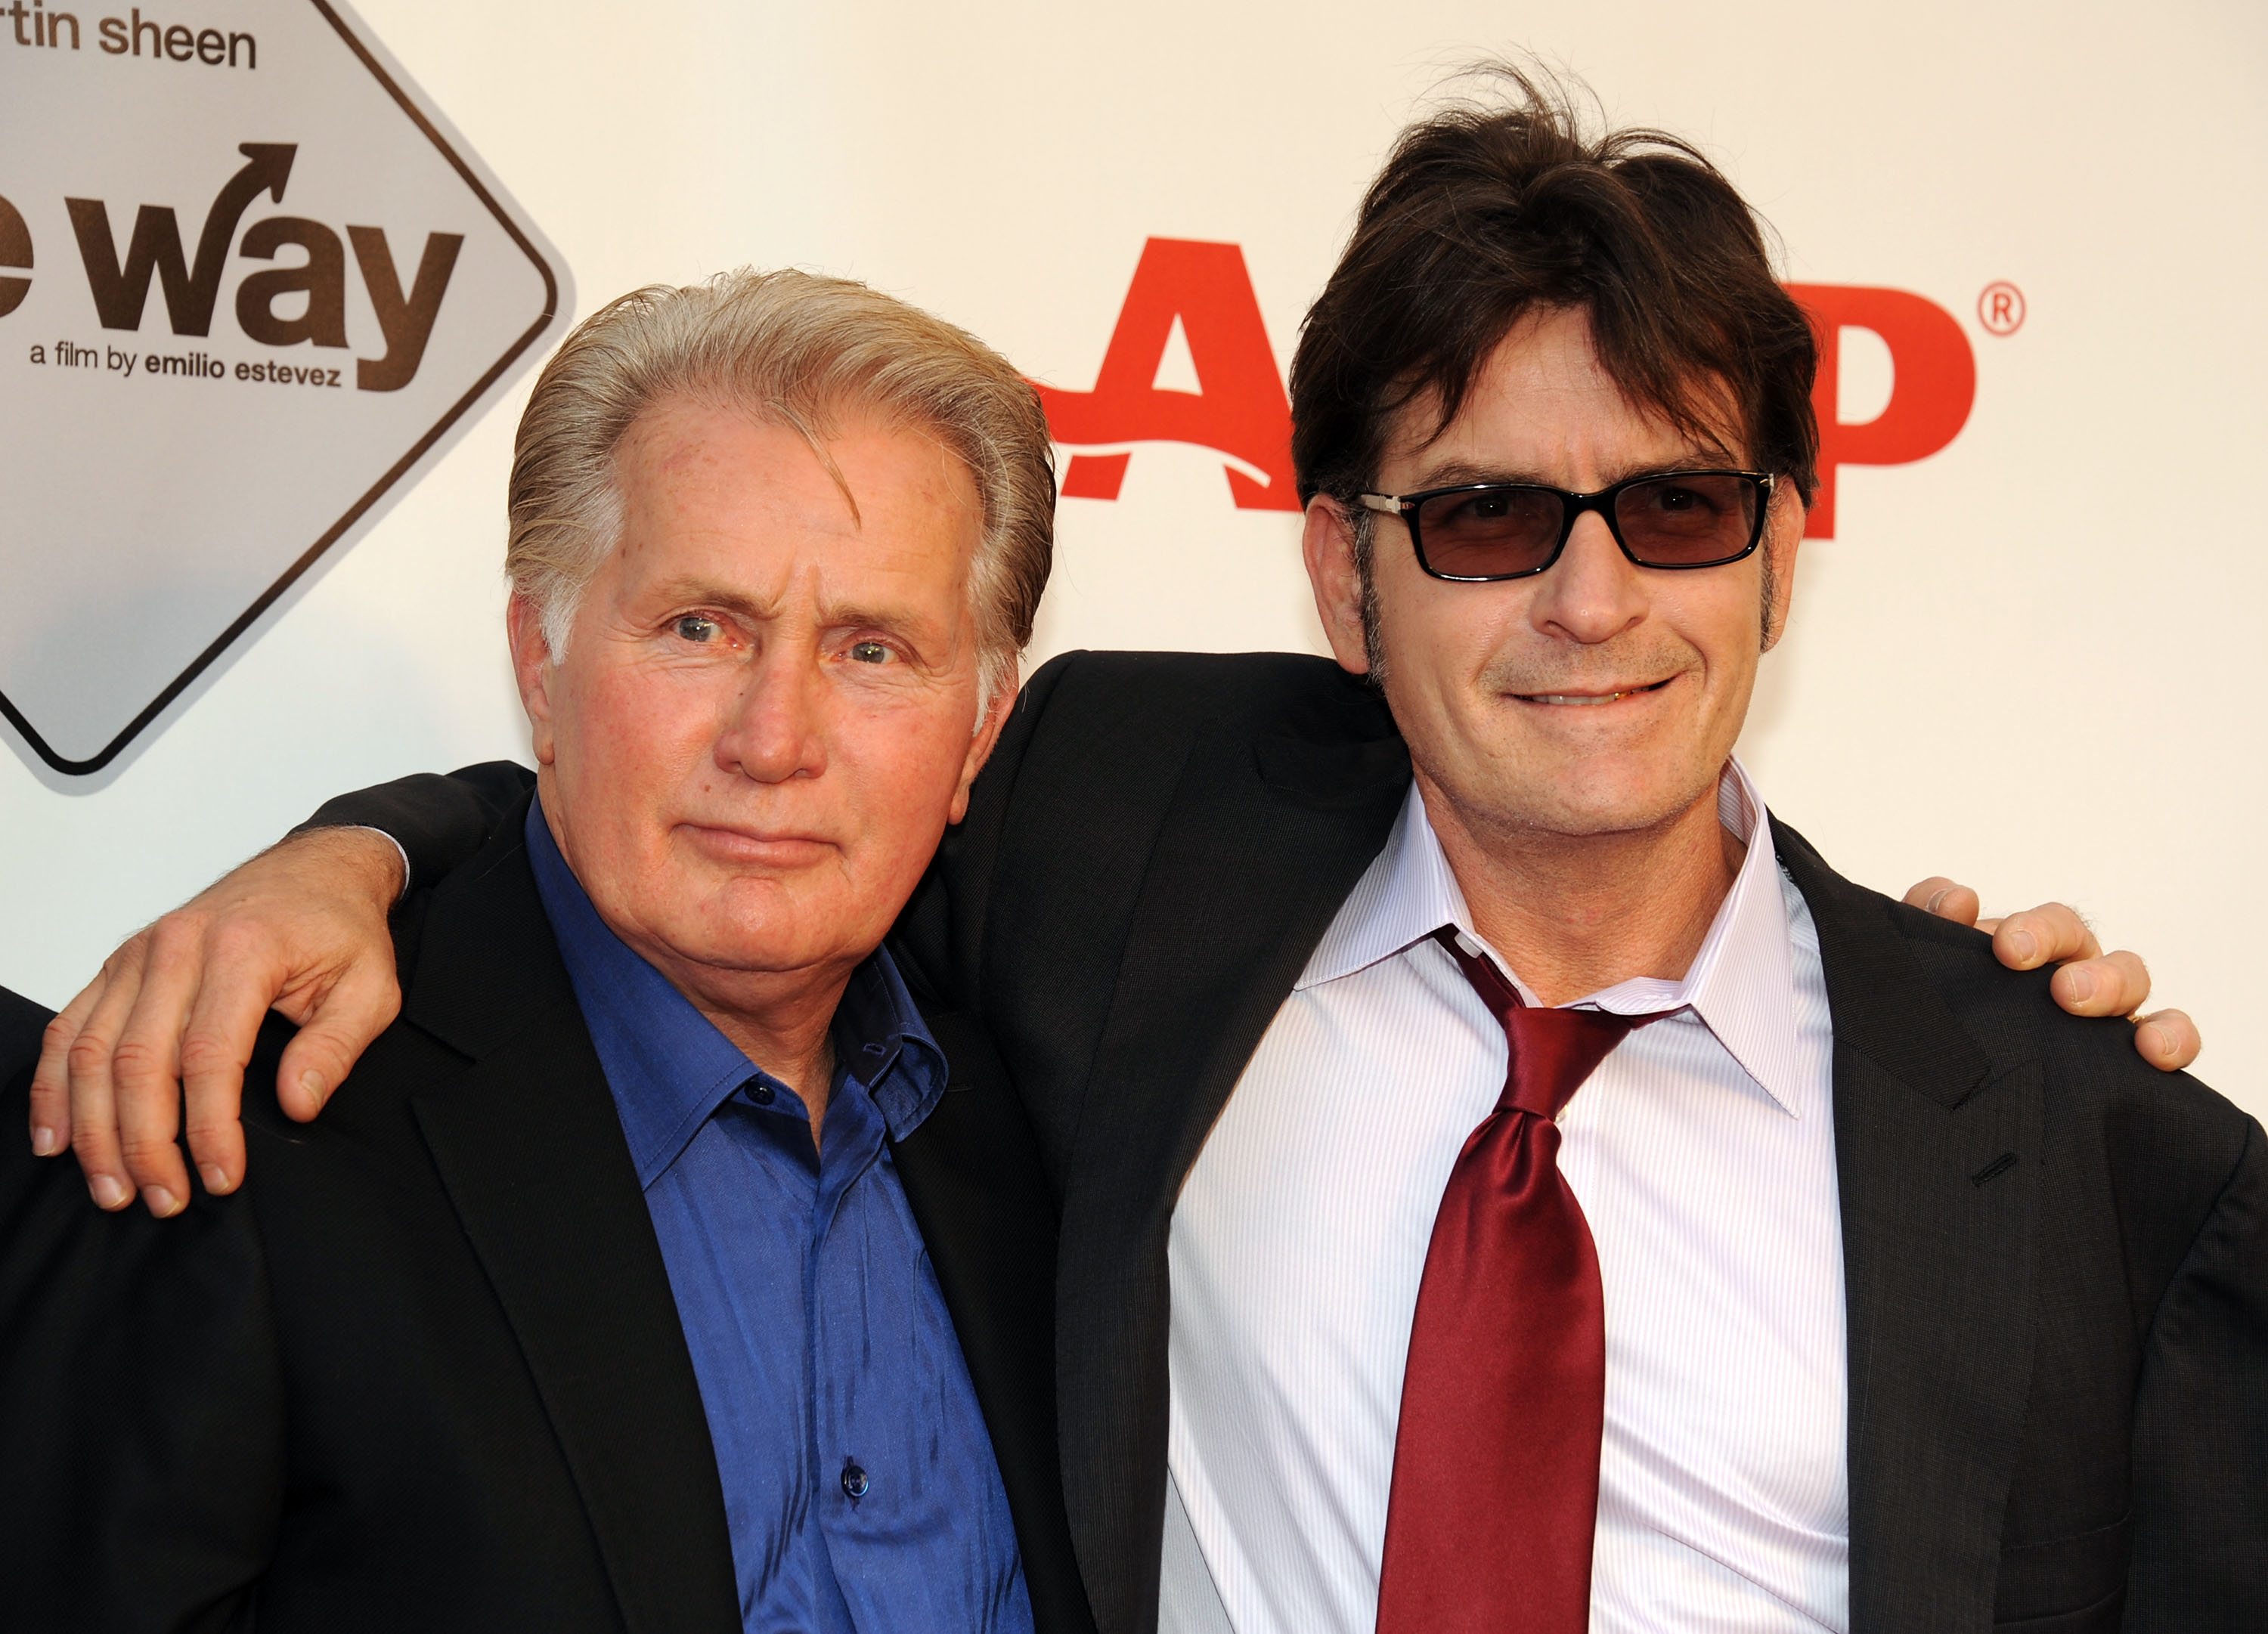 Martin Sheen und Charlie Sheen bei der Vorführung von "The Way" am 23. September 2011 in Los Angeles, Kalifornien | Quelle: Getty Images